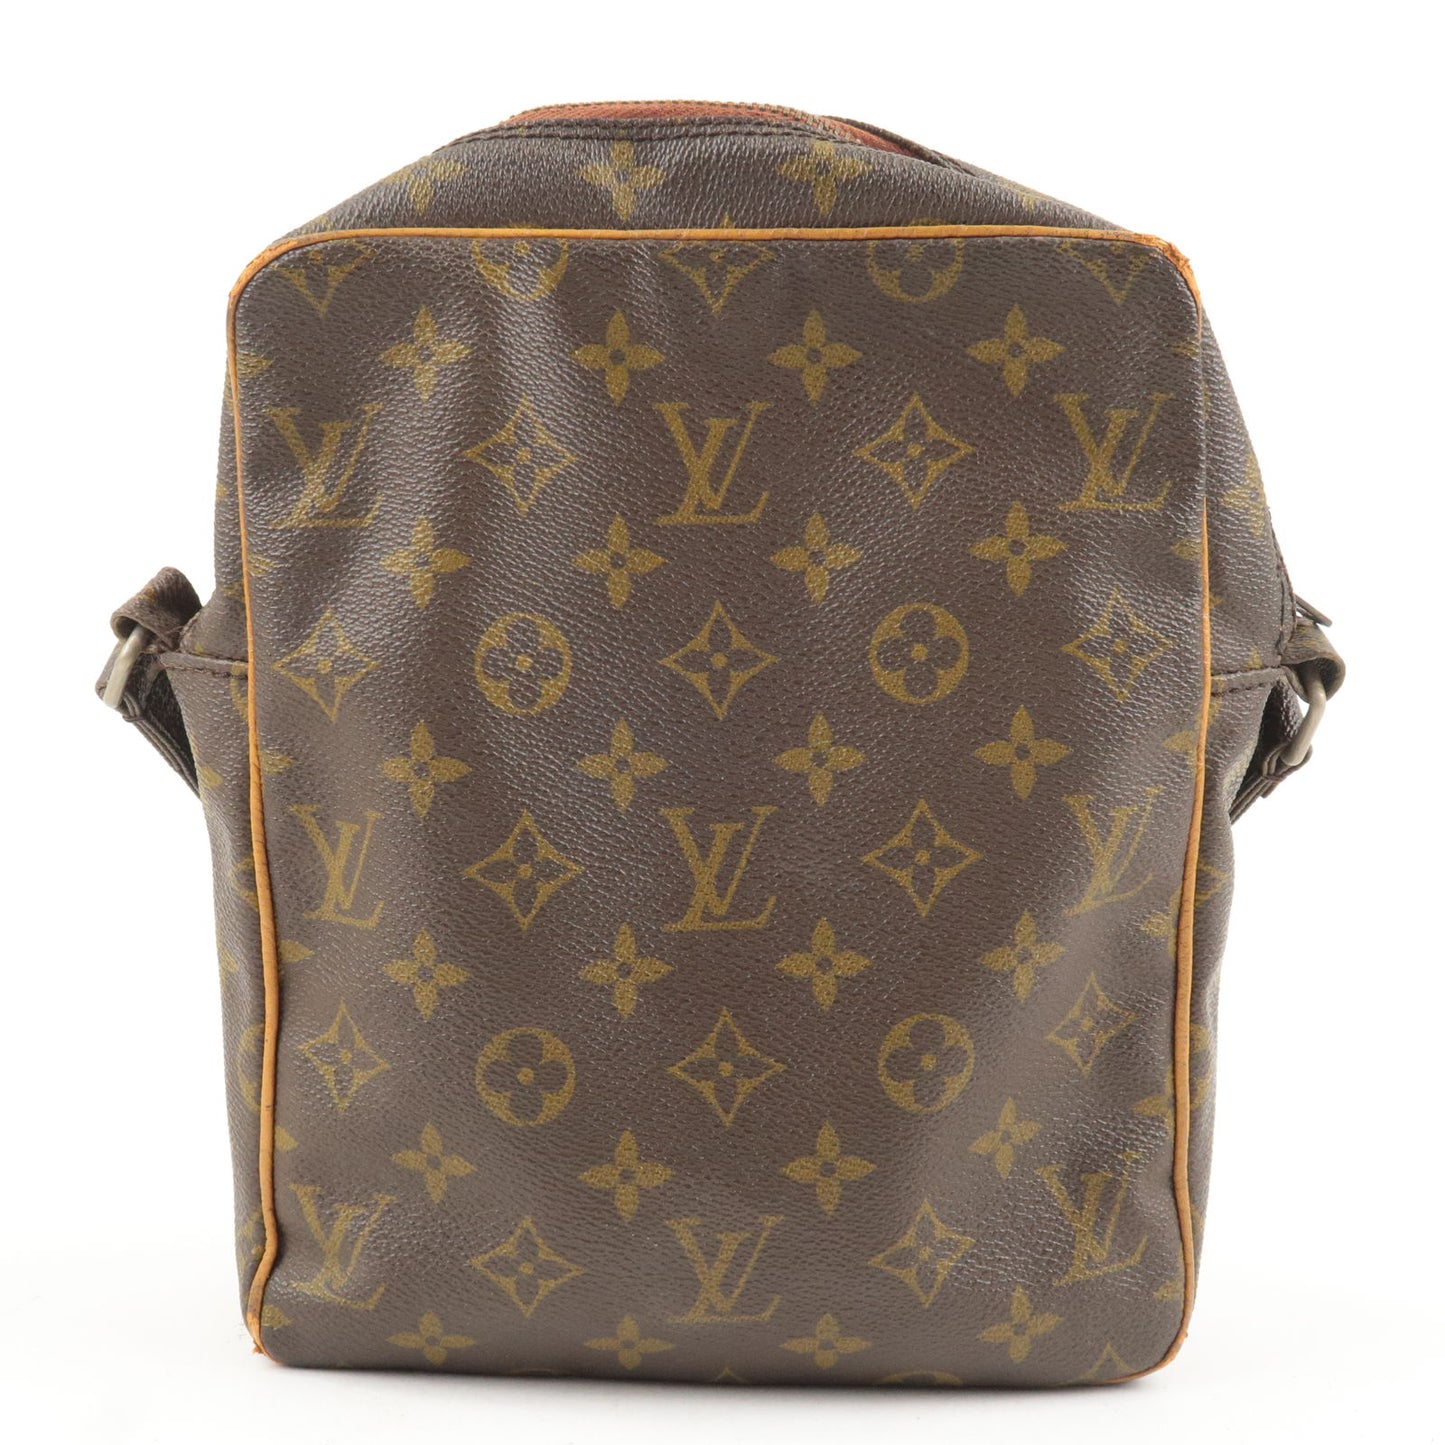 Vintage Louis Vuitton Monogram Marceau Bag